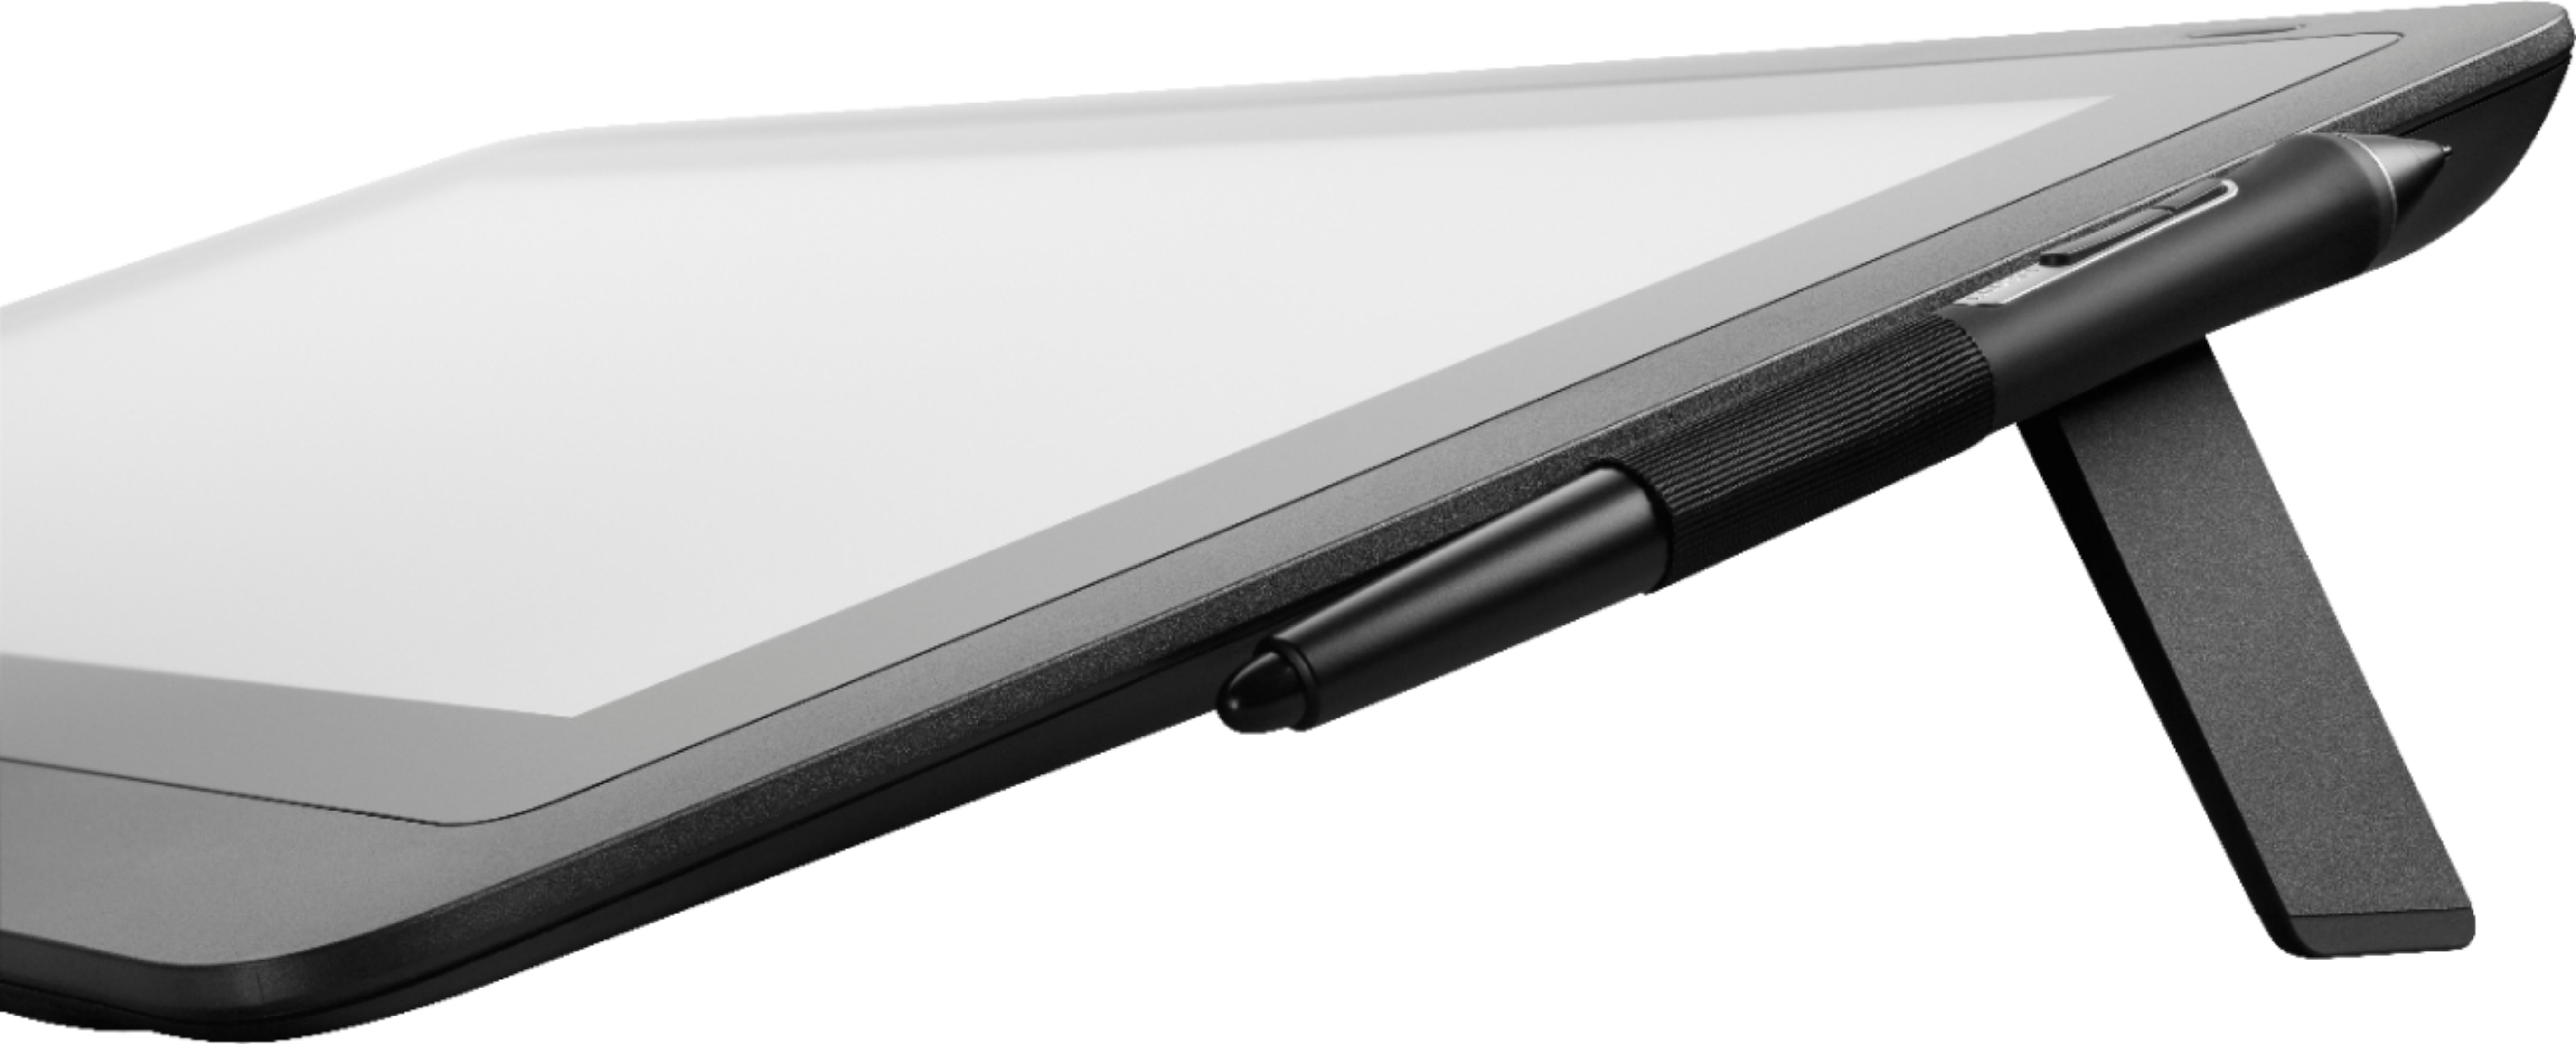 Tablet Digitadora Wacom Cintiq 16 LCD HDMI USB